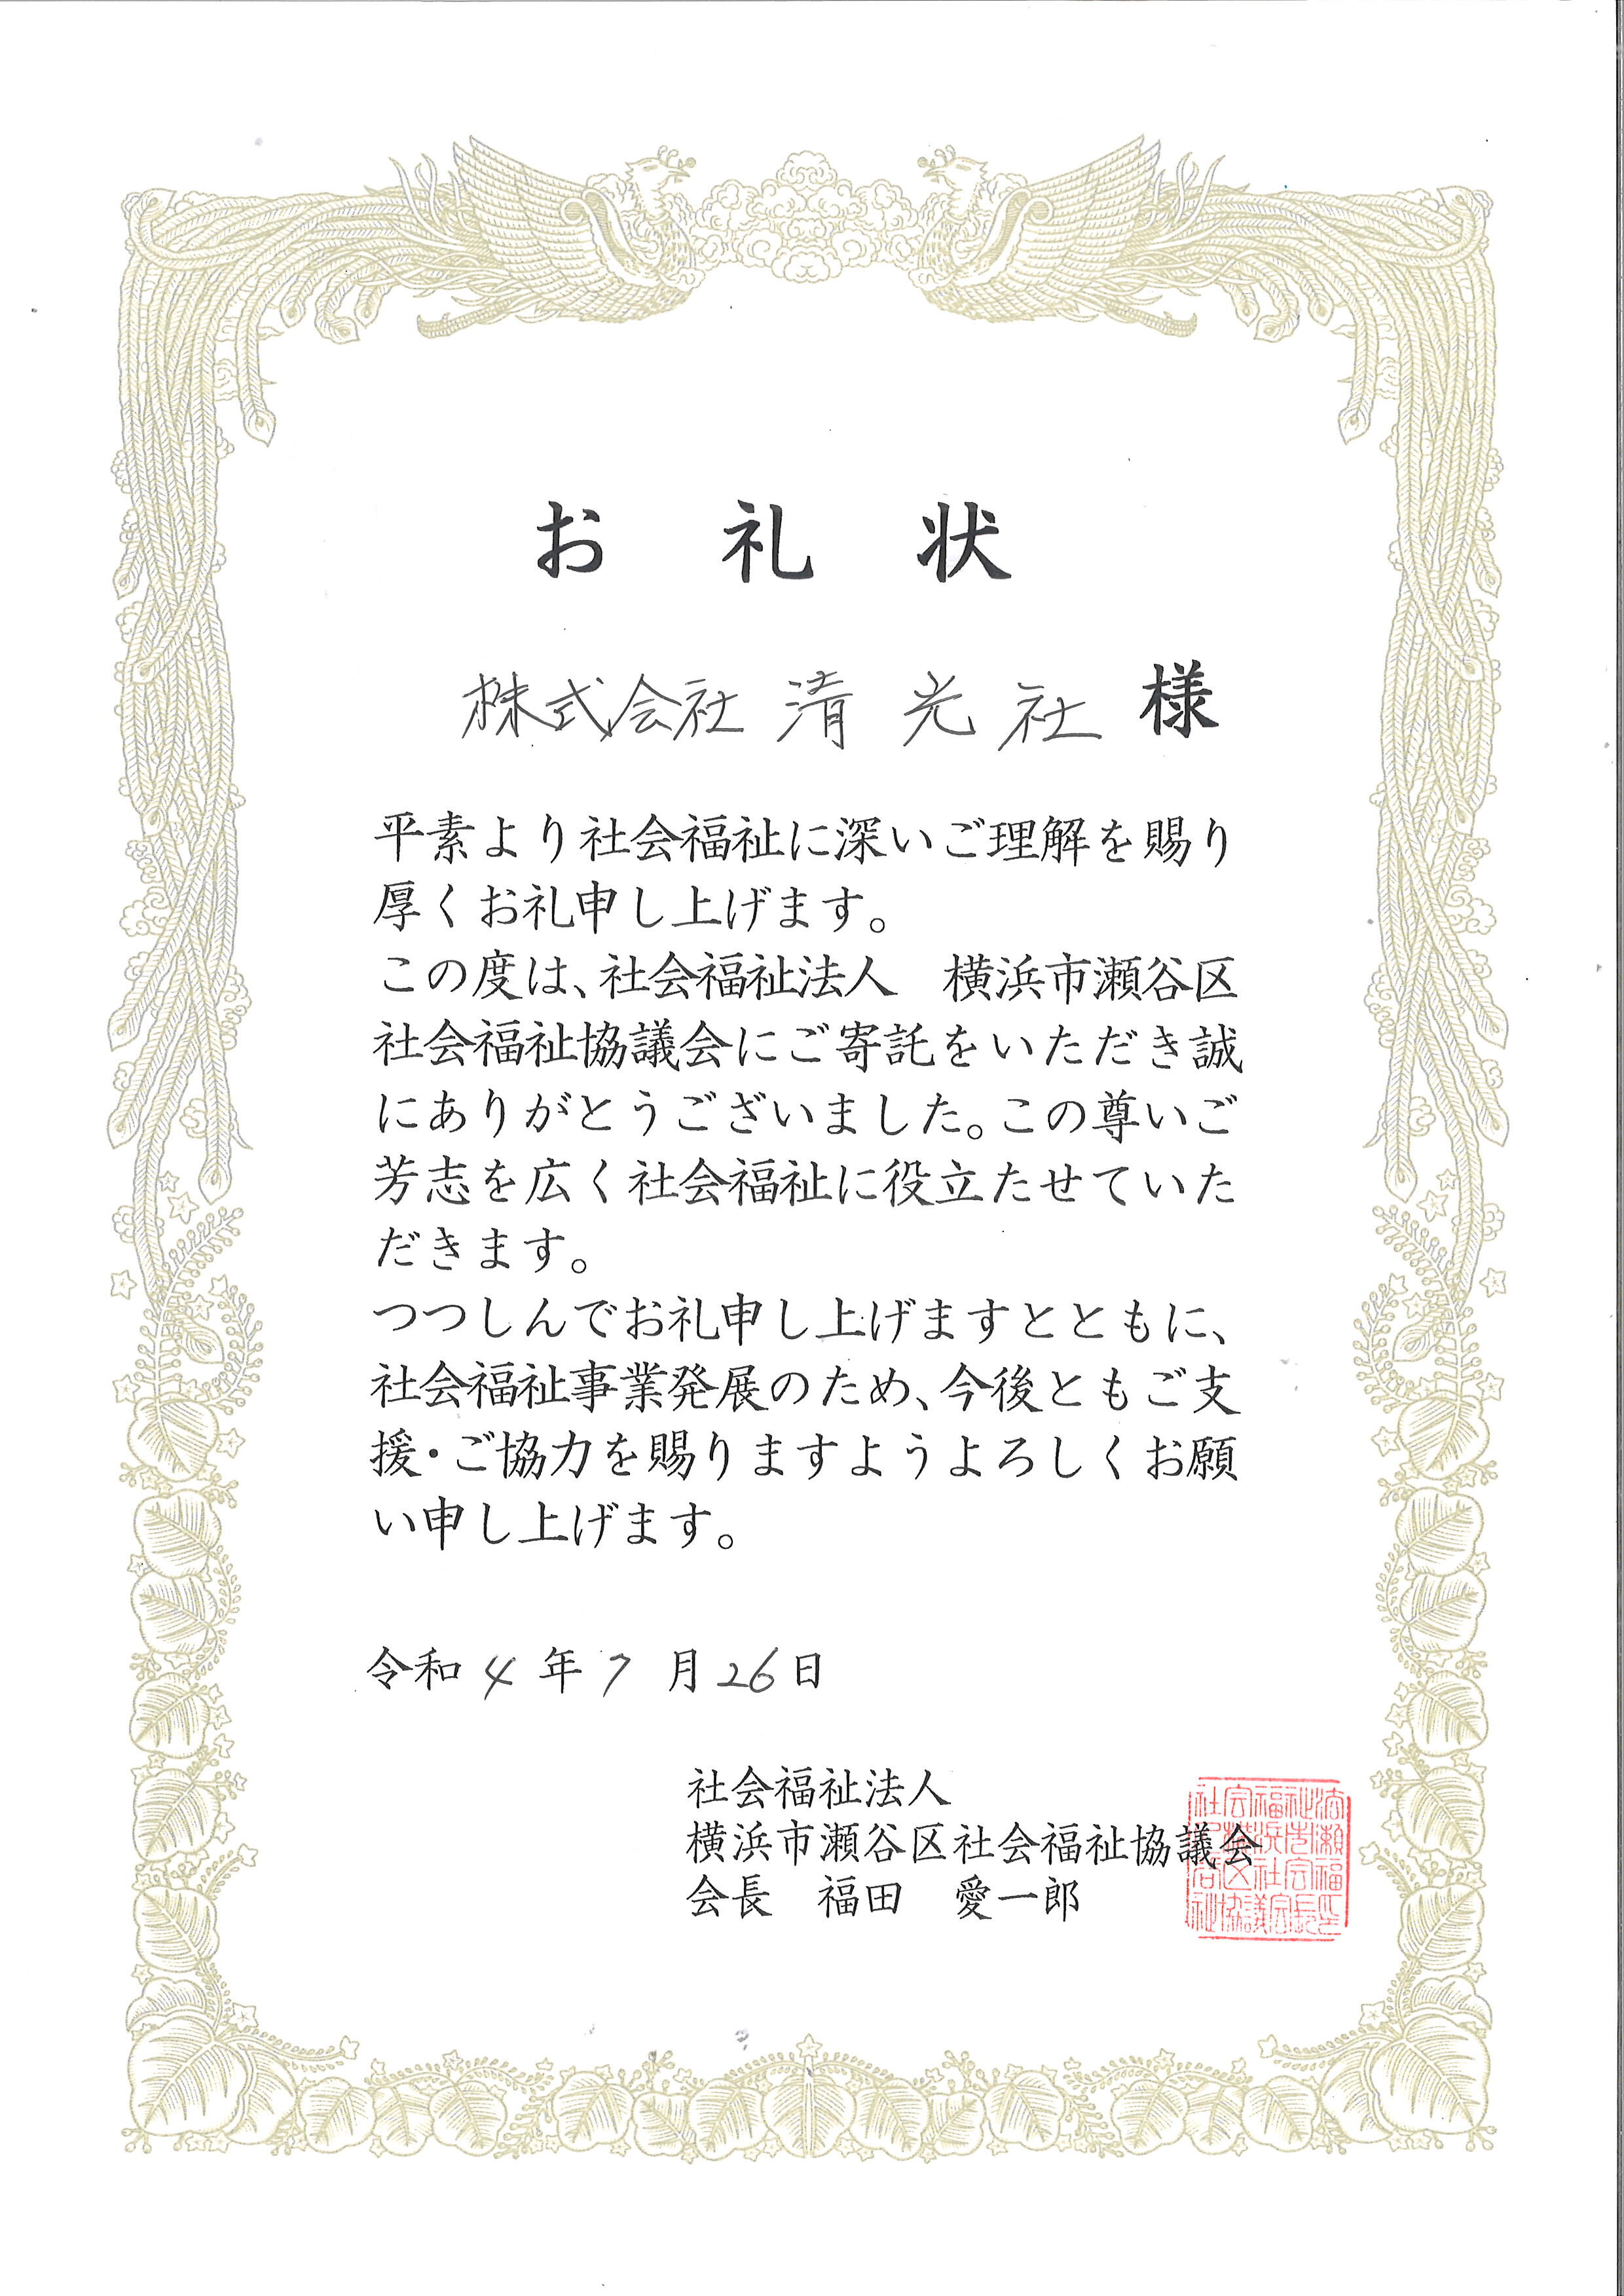 横浜市瀬谷区社会福祉協議会より感謝状をいただきました